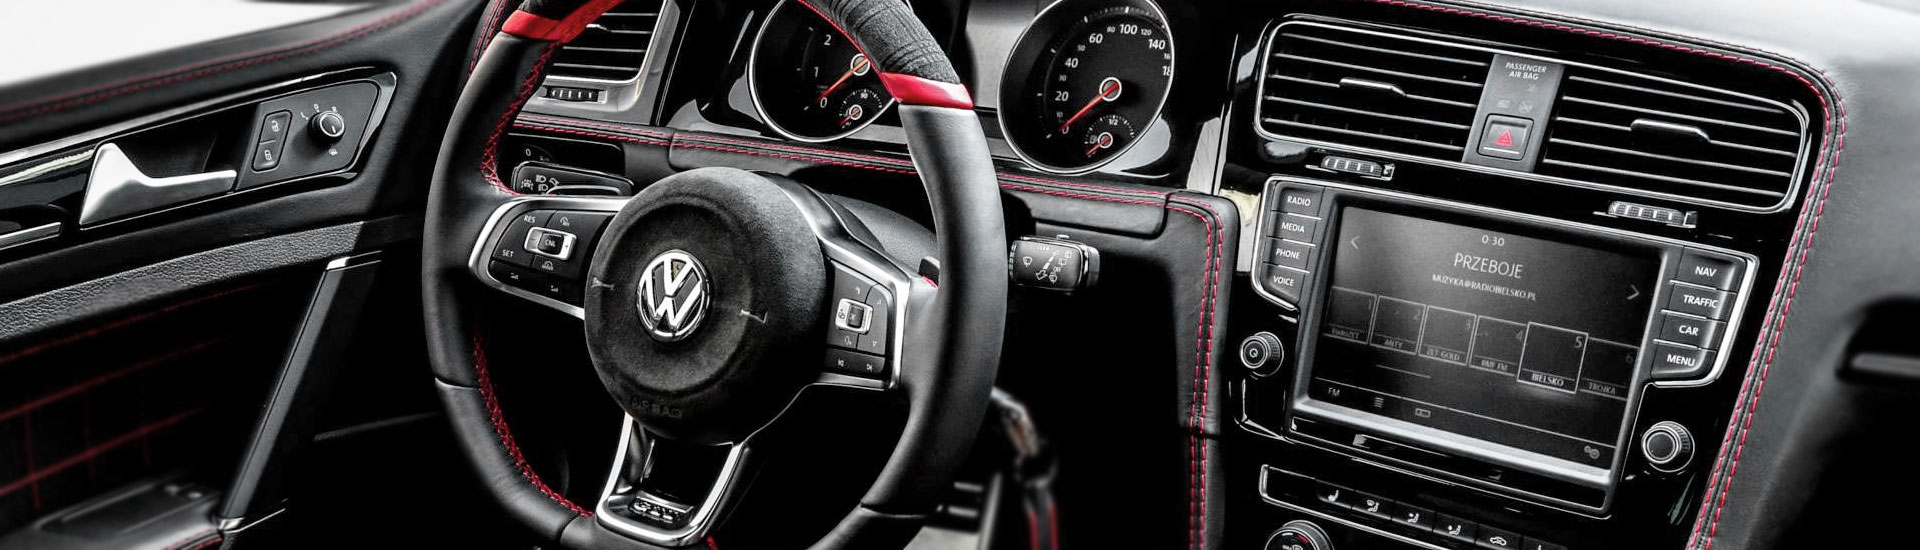 2015 Volkswagen e-Golf Custom Dash Kits